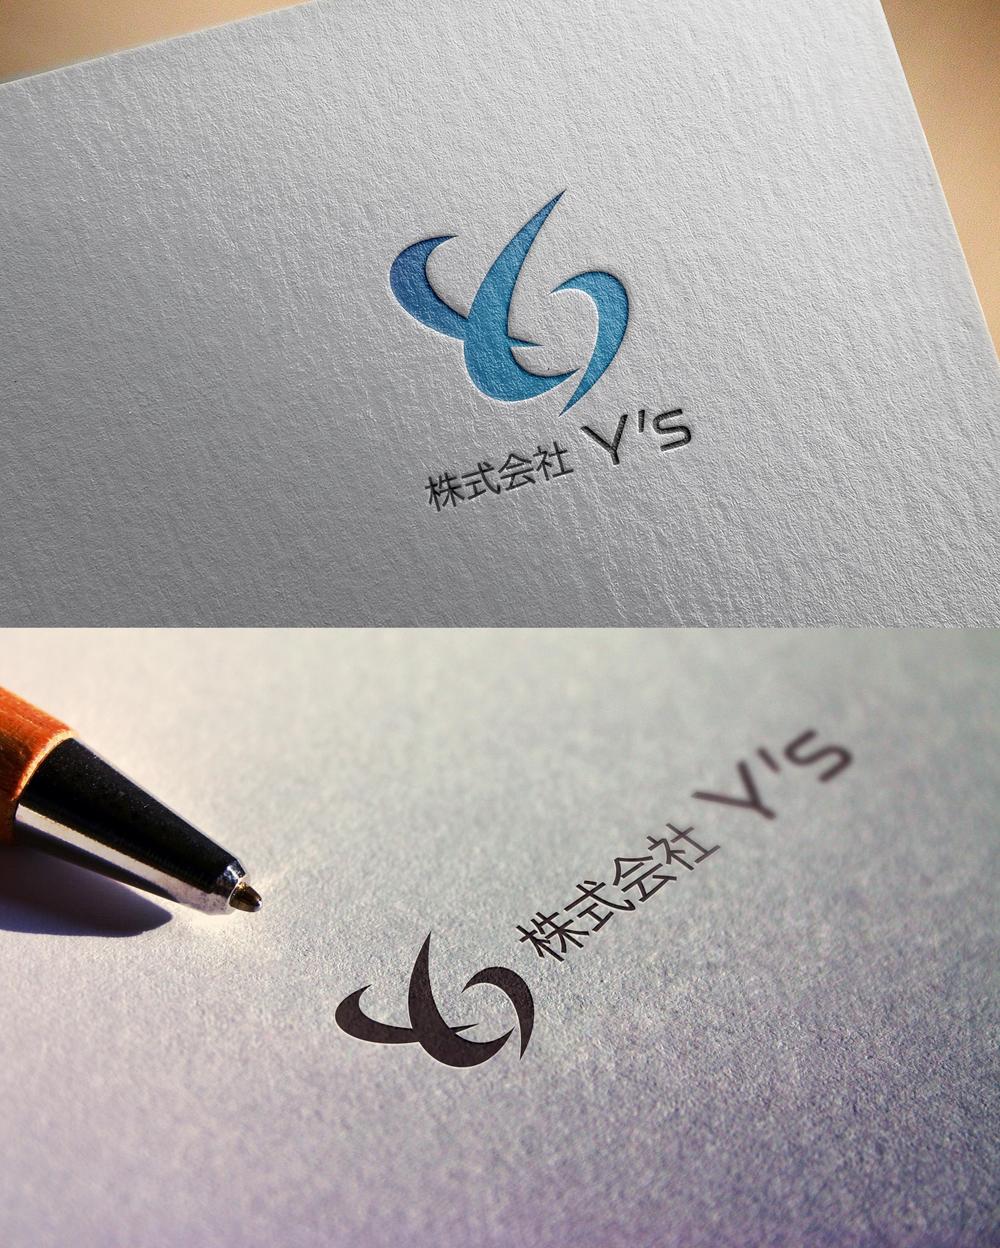 リハビリ・パーソナルトレーニング施設運営「株式会社Y's」のロゴ